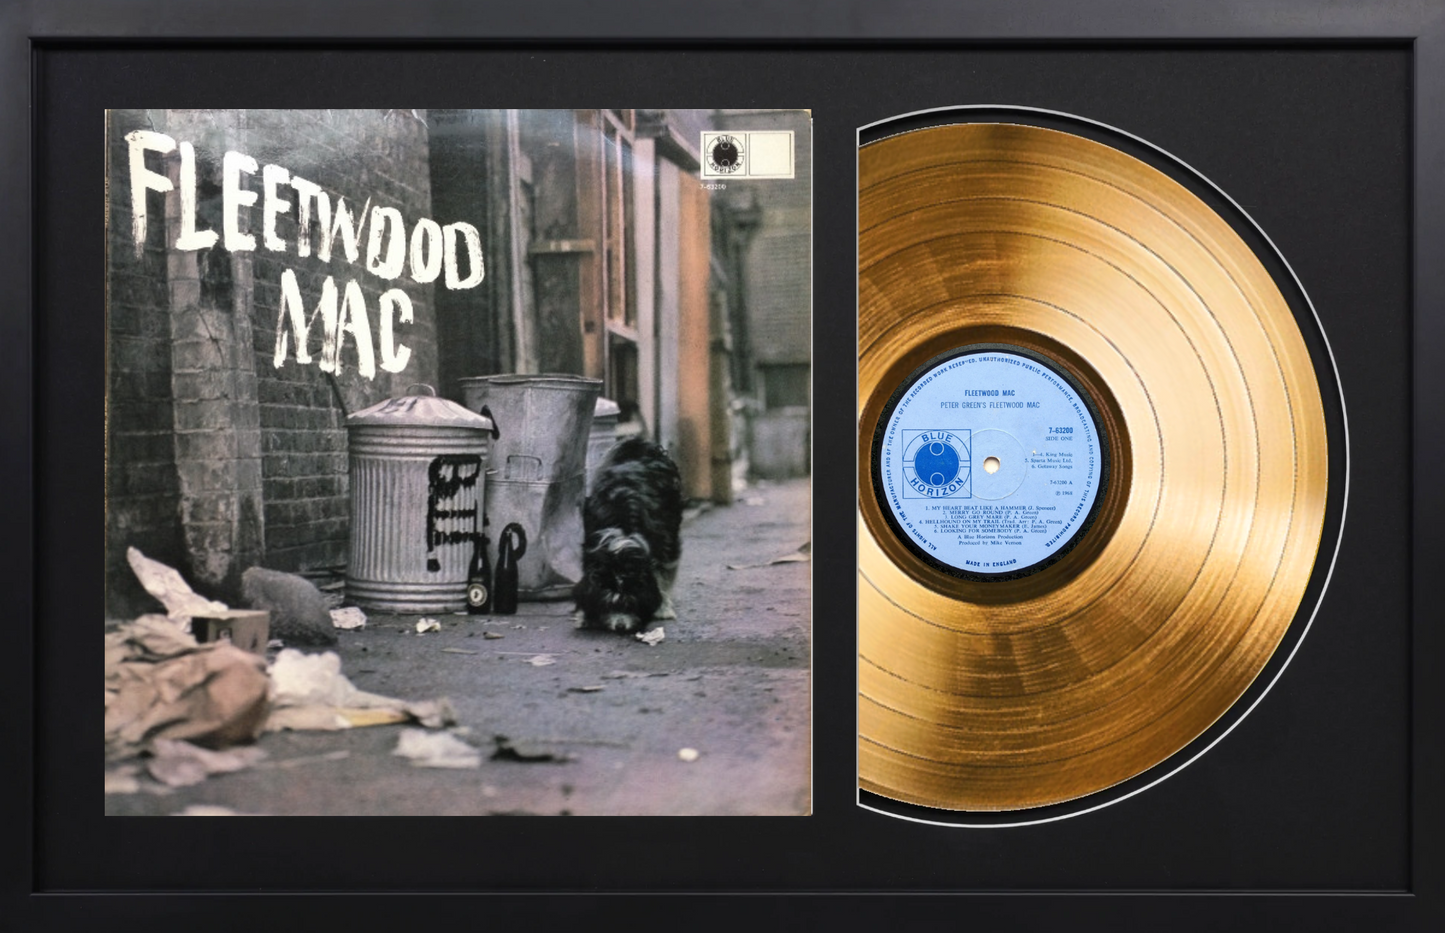 Fleetwood Mac - Fleetwood Mac (1968) - 14K Gold Plated Vinyl